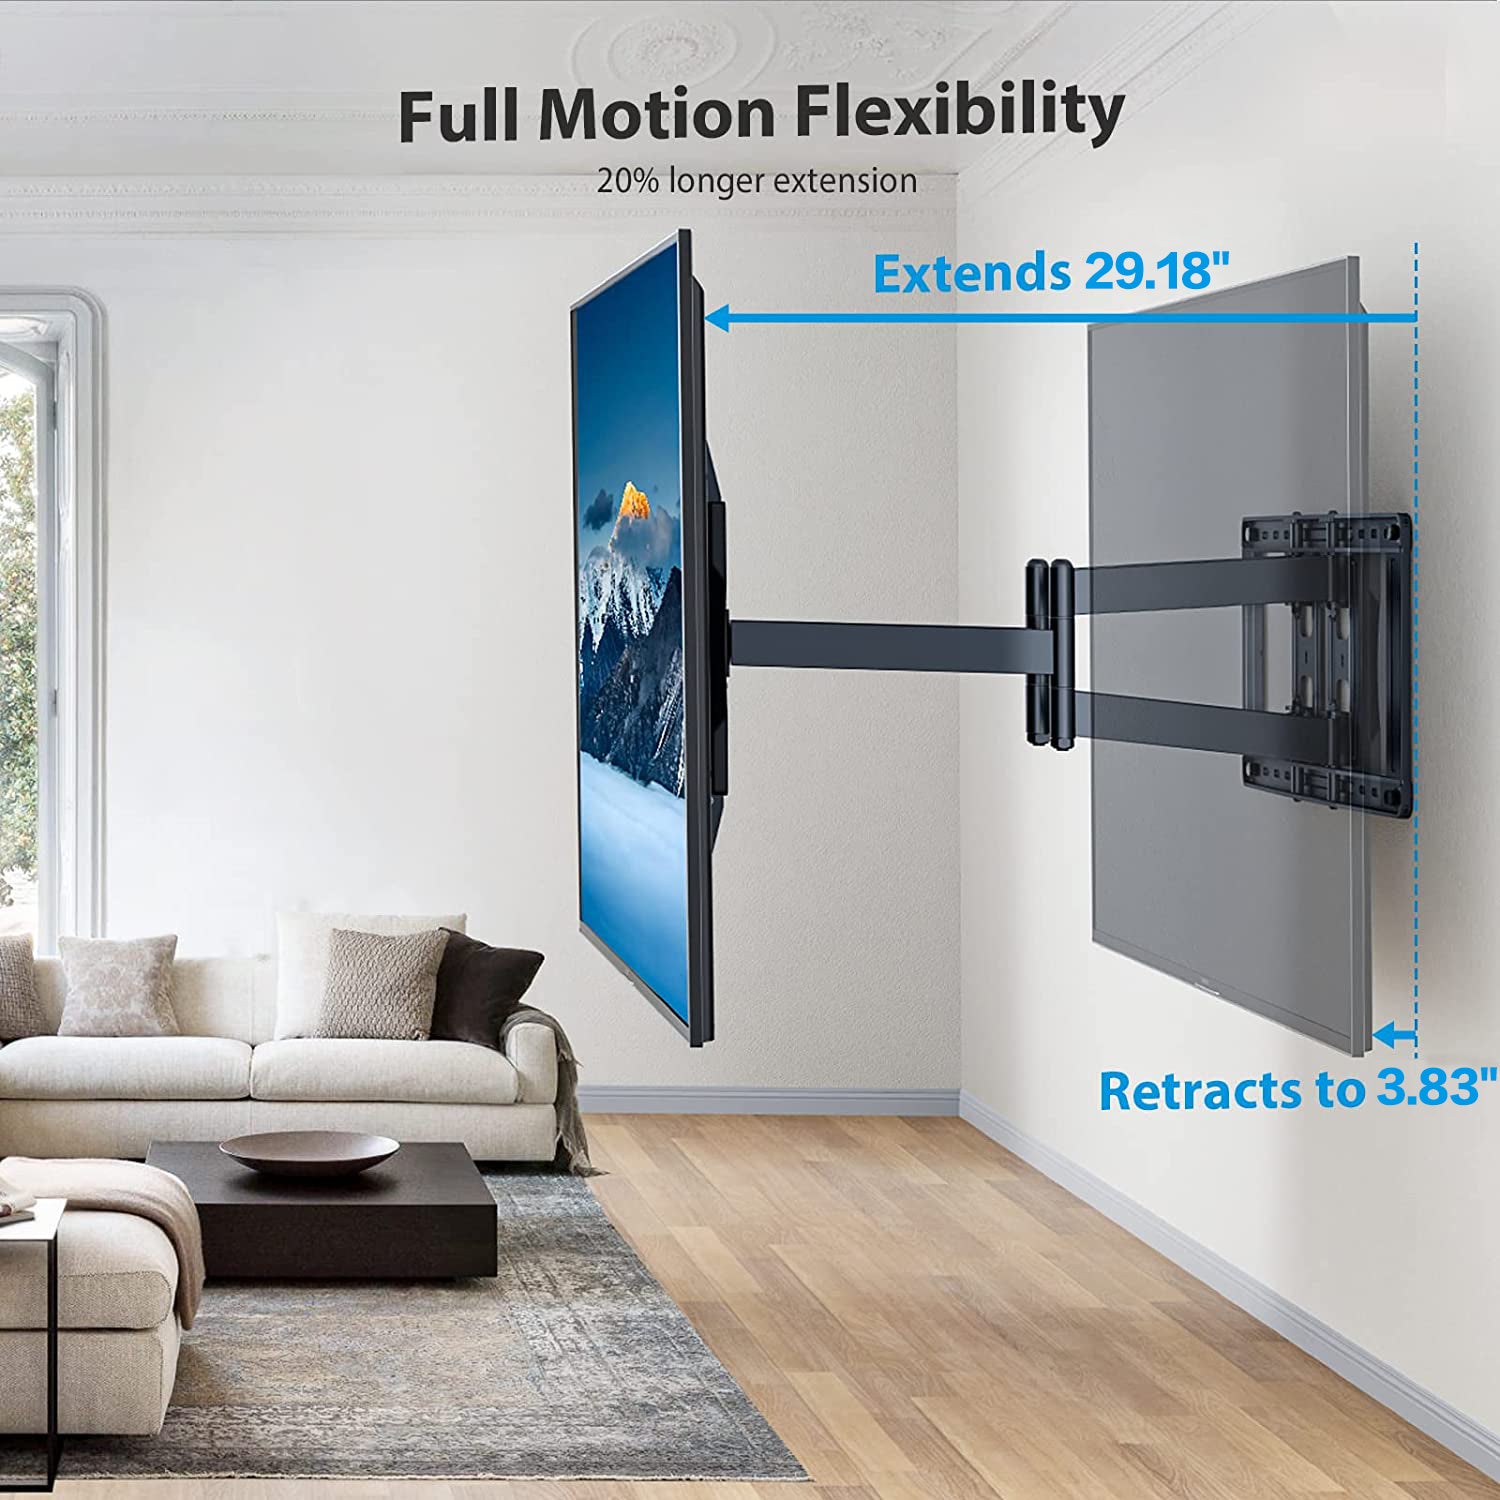 Full motion TV Wall Mount For 50